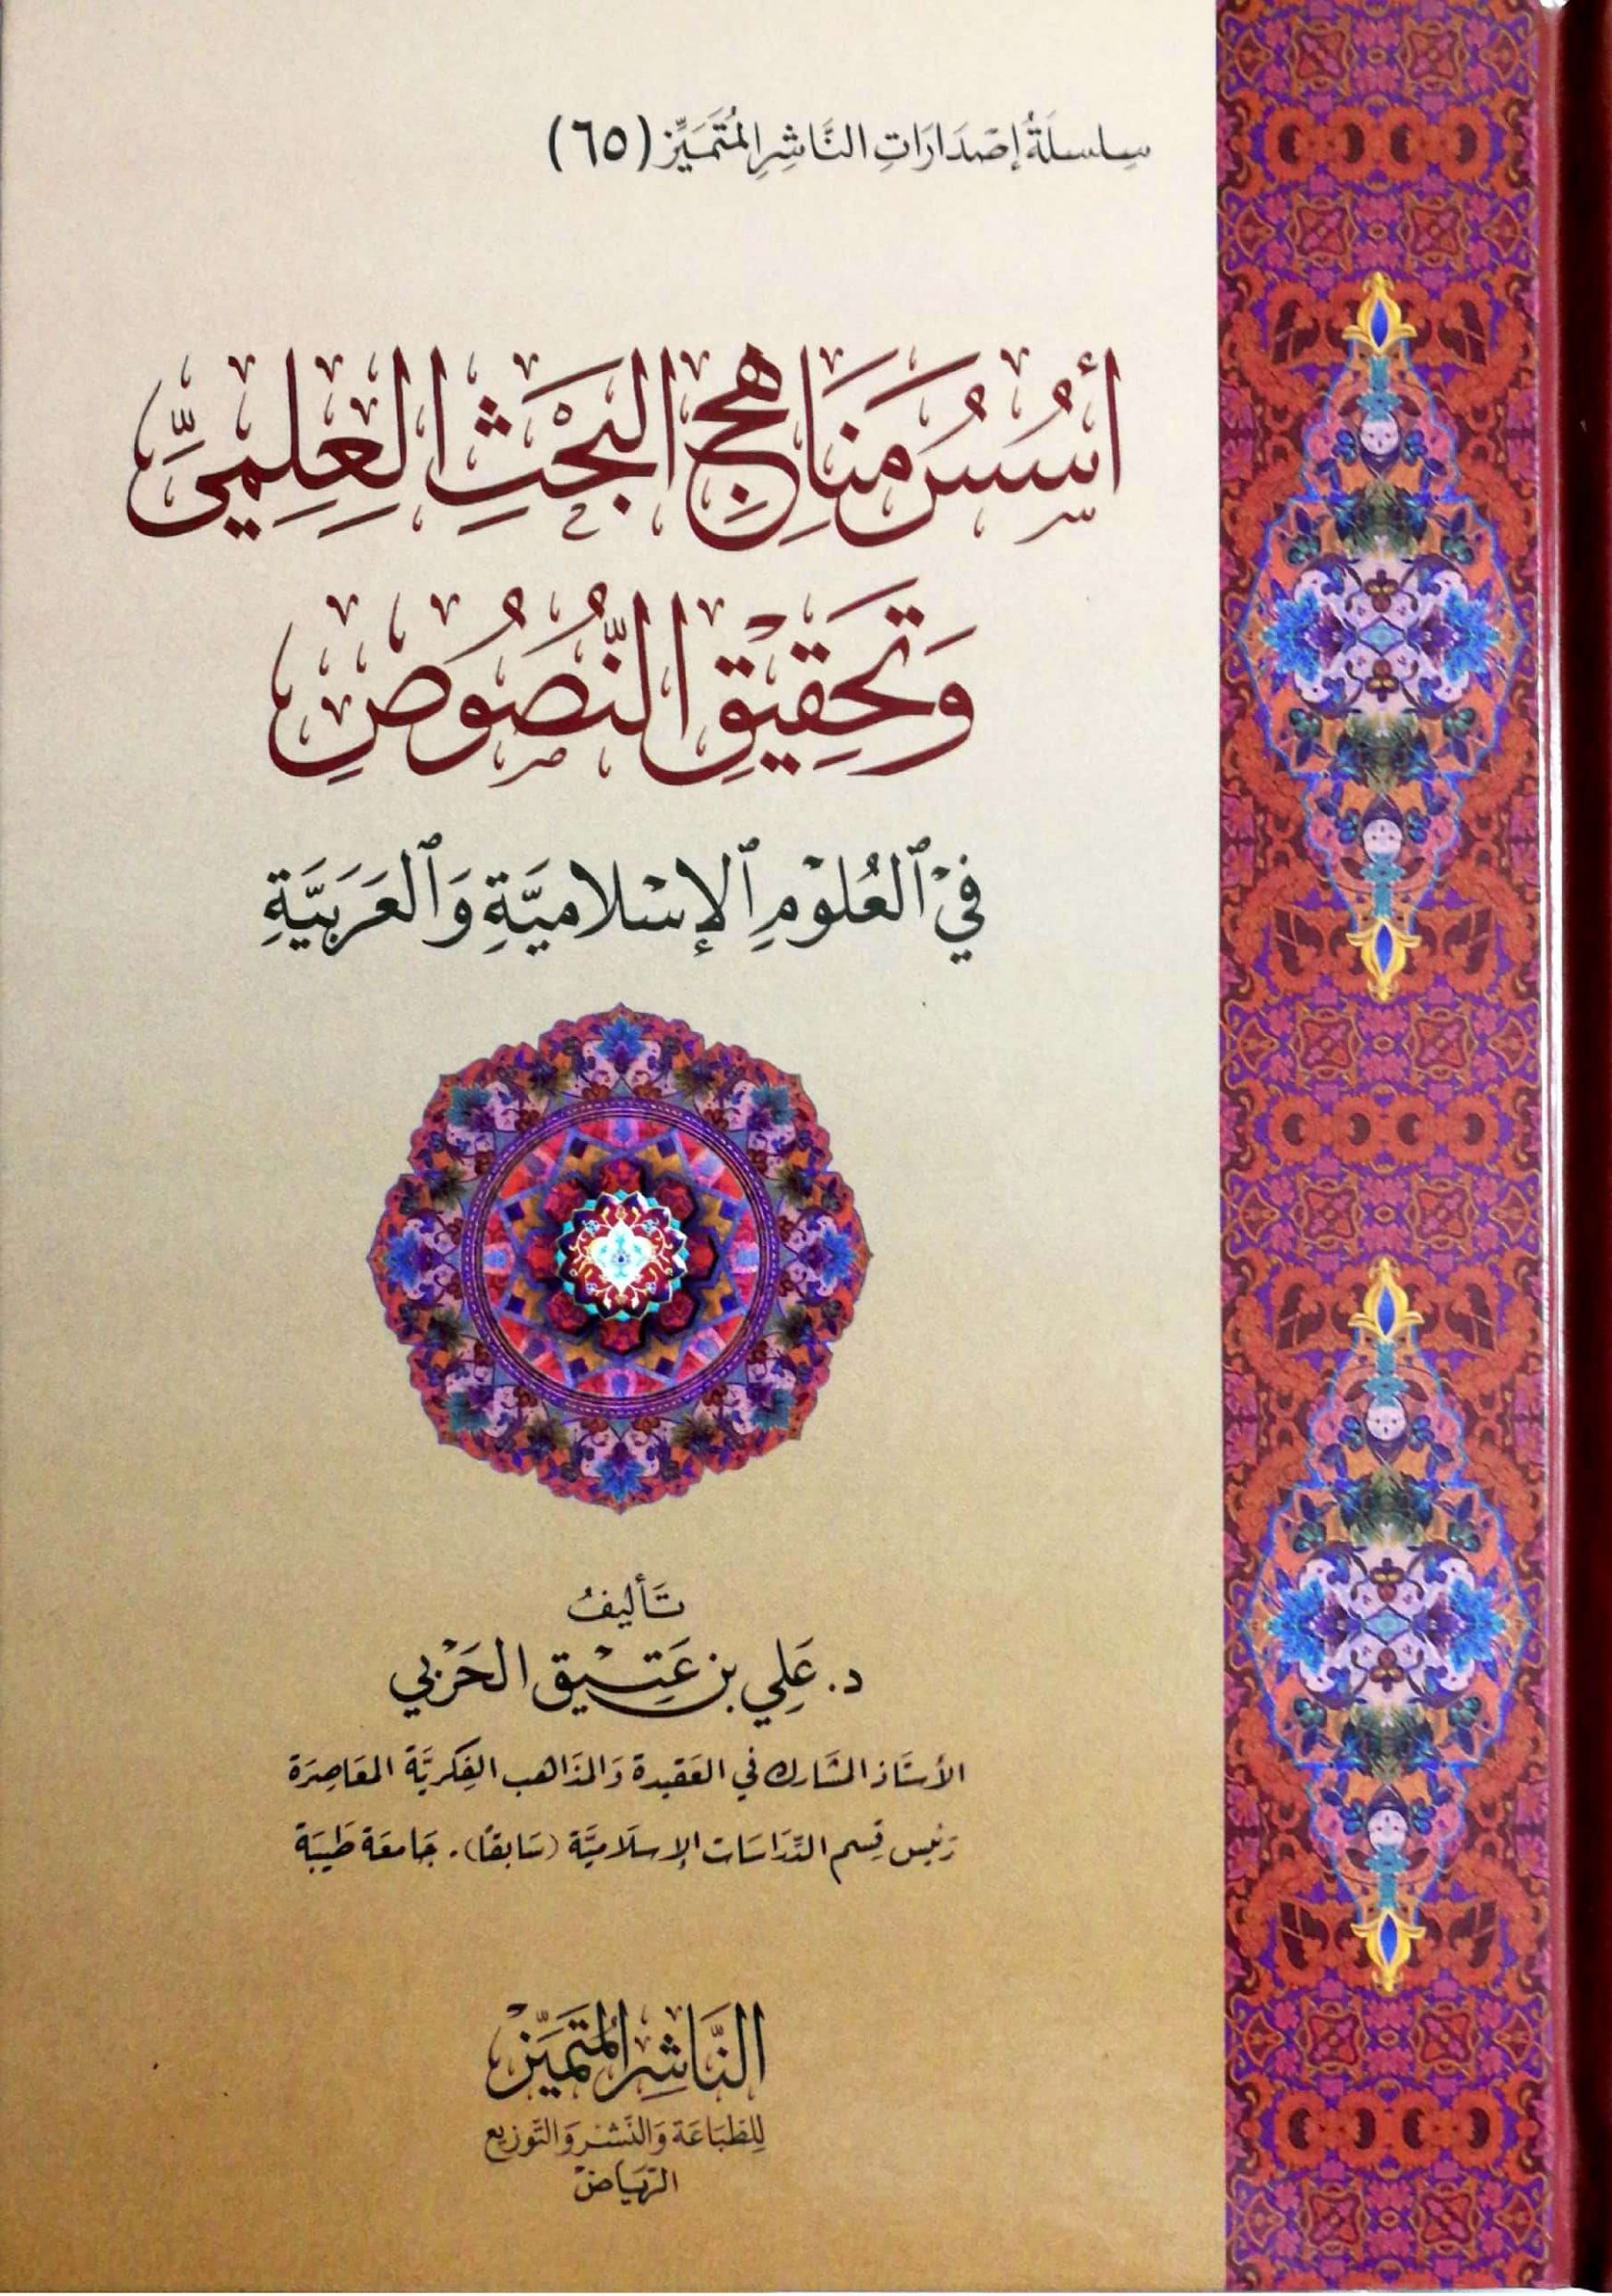 أسس مناهج البحث العلمي وتحقيق النصوص في العلوم الإسلامية والعربية